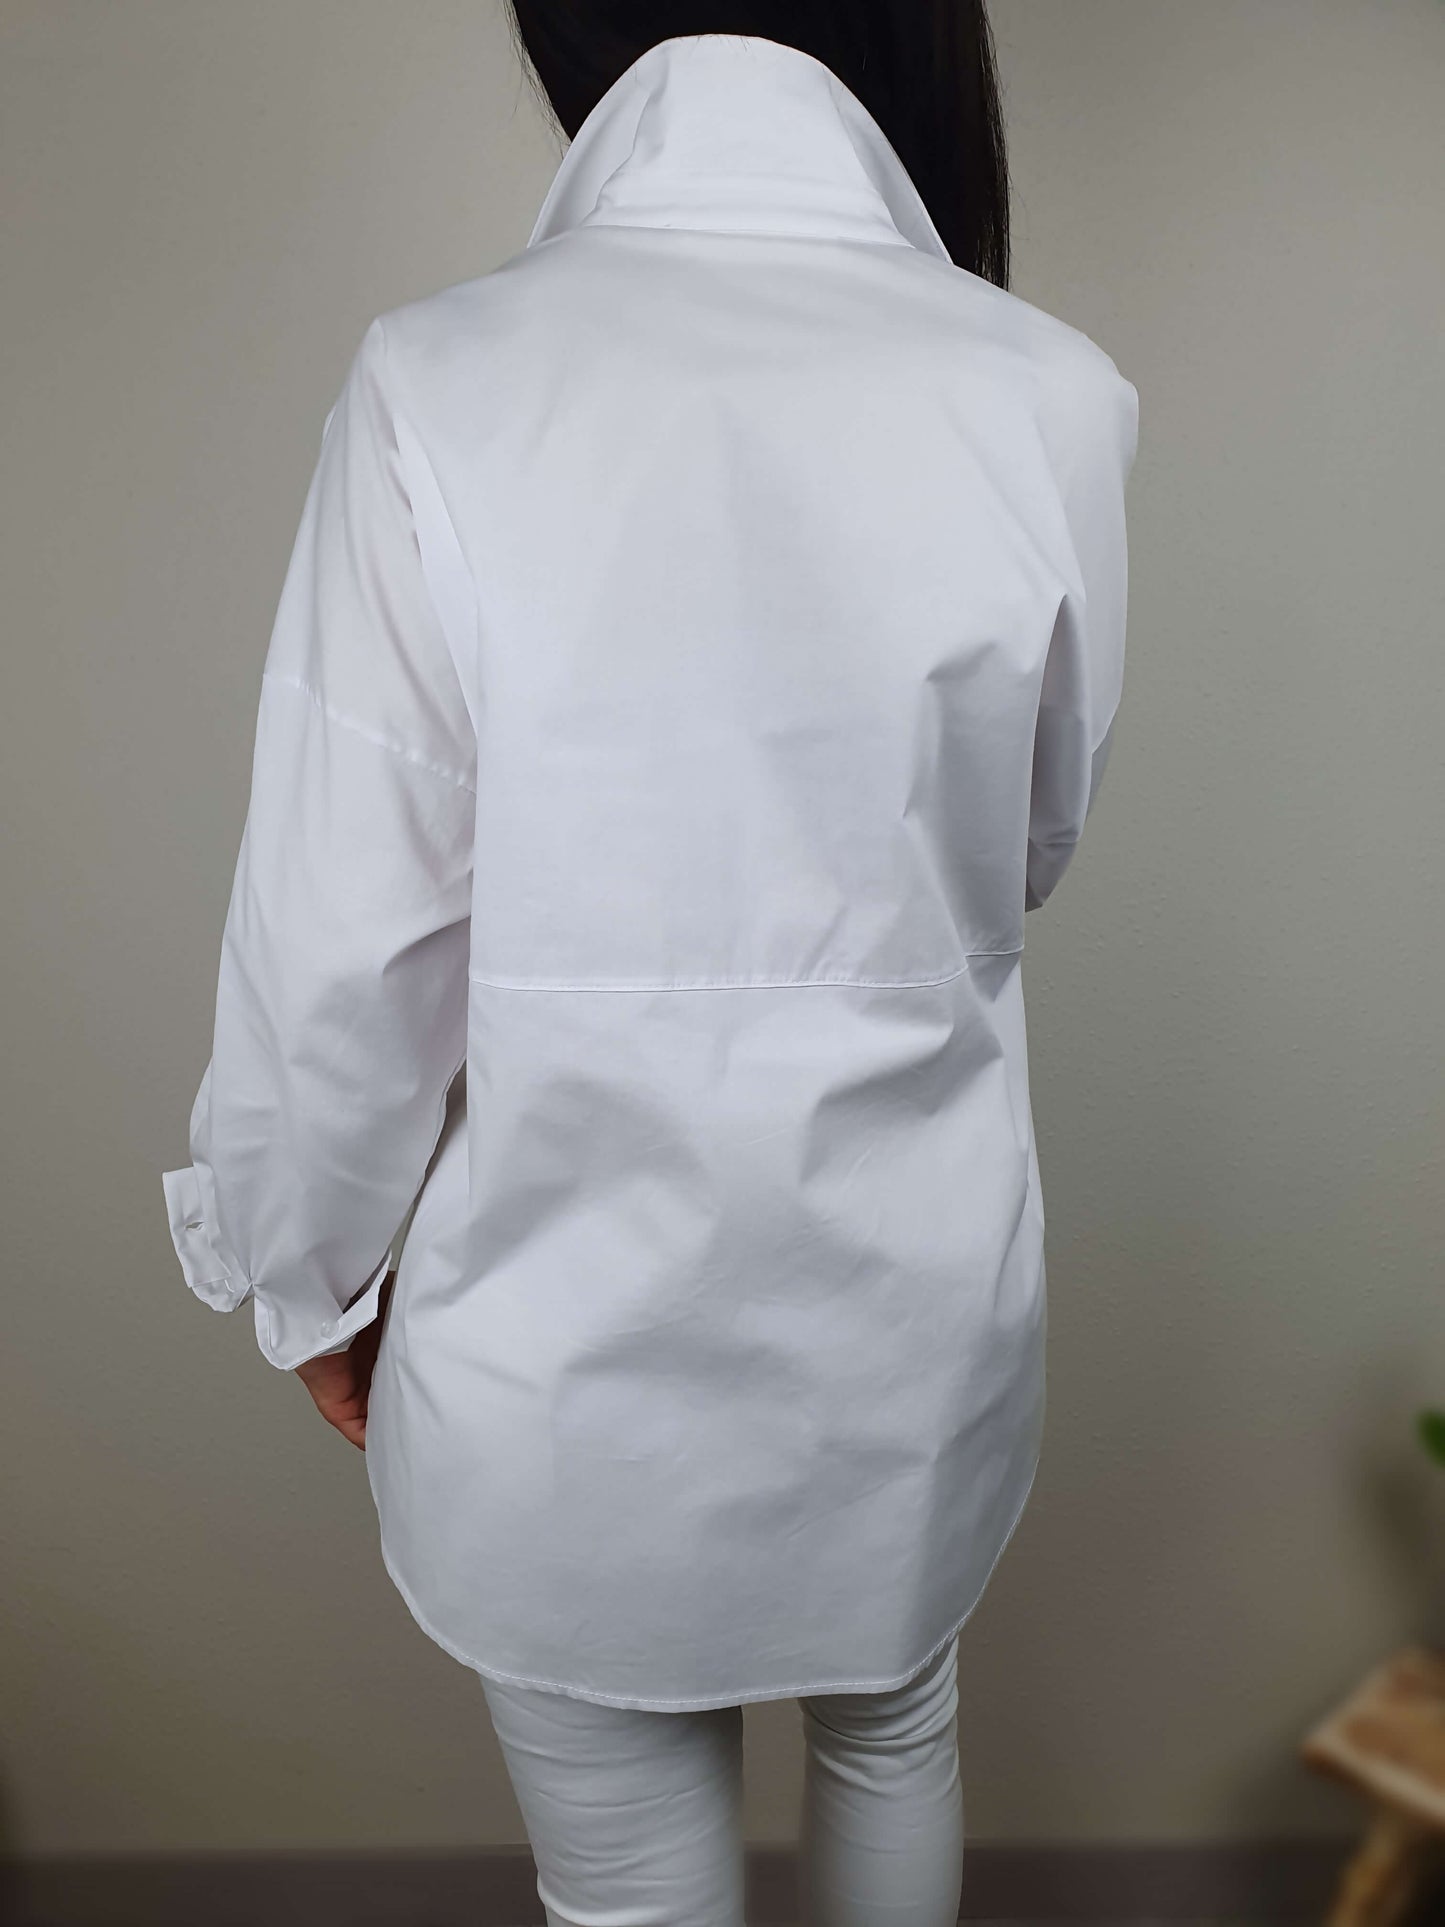 Chemise blanche manches longues à decouvrir sur www.gayano.fr